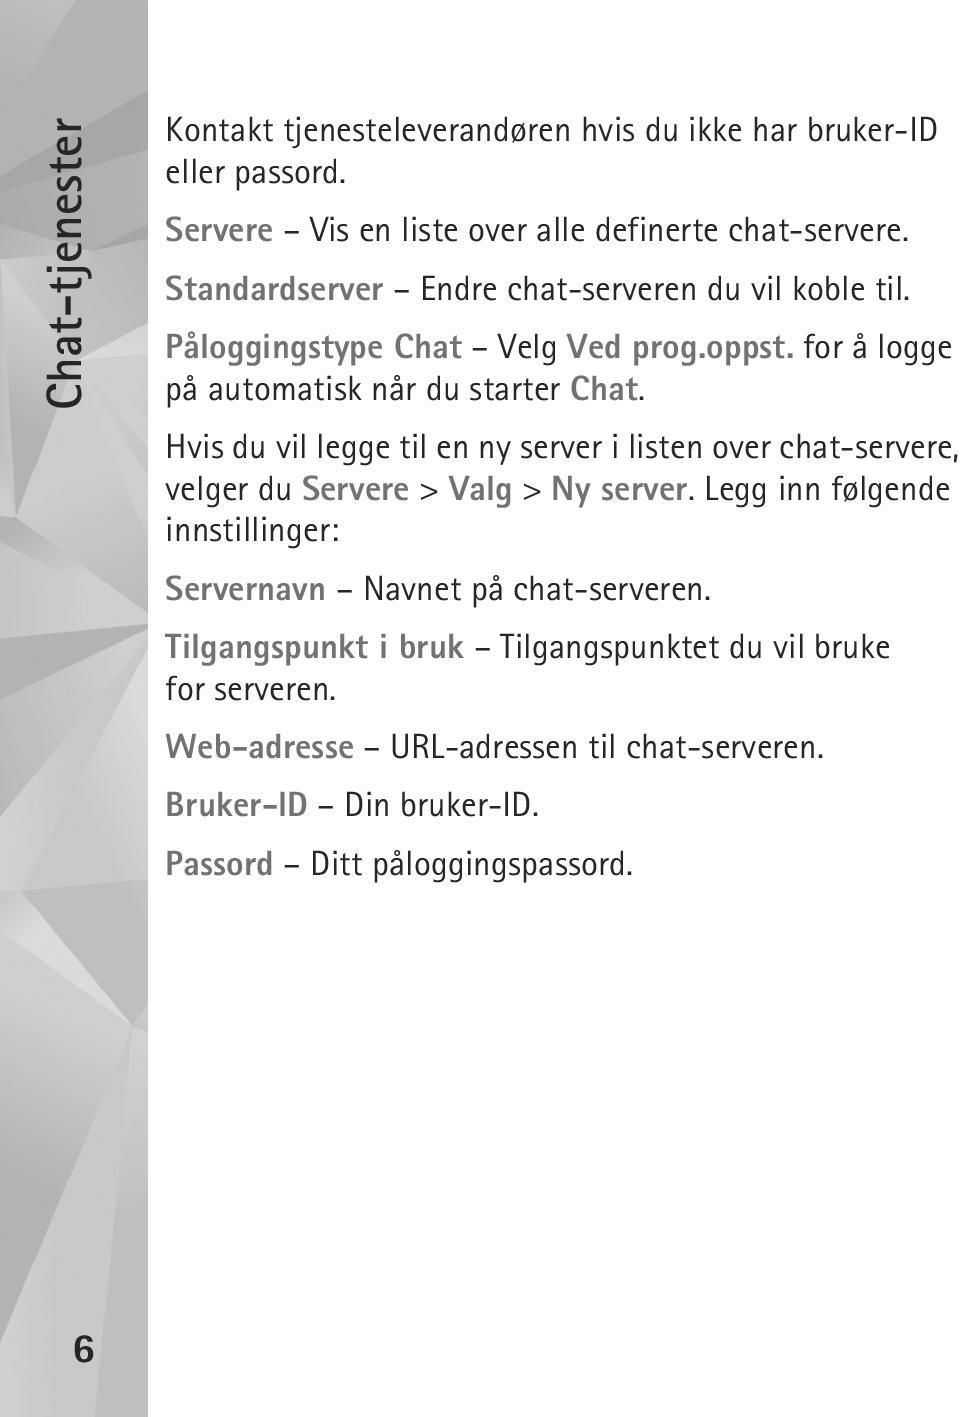 Hvis du vil legge til en ny server i listen over chat-servere, velger du Servere > Valg > Ny server.